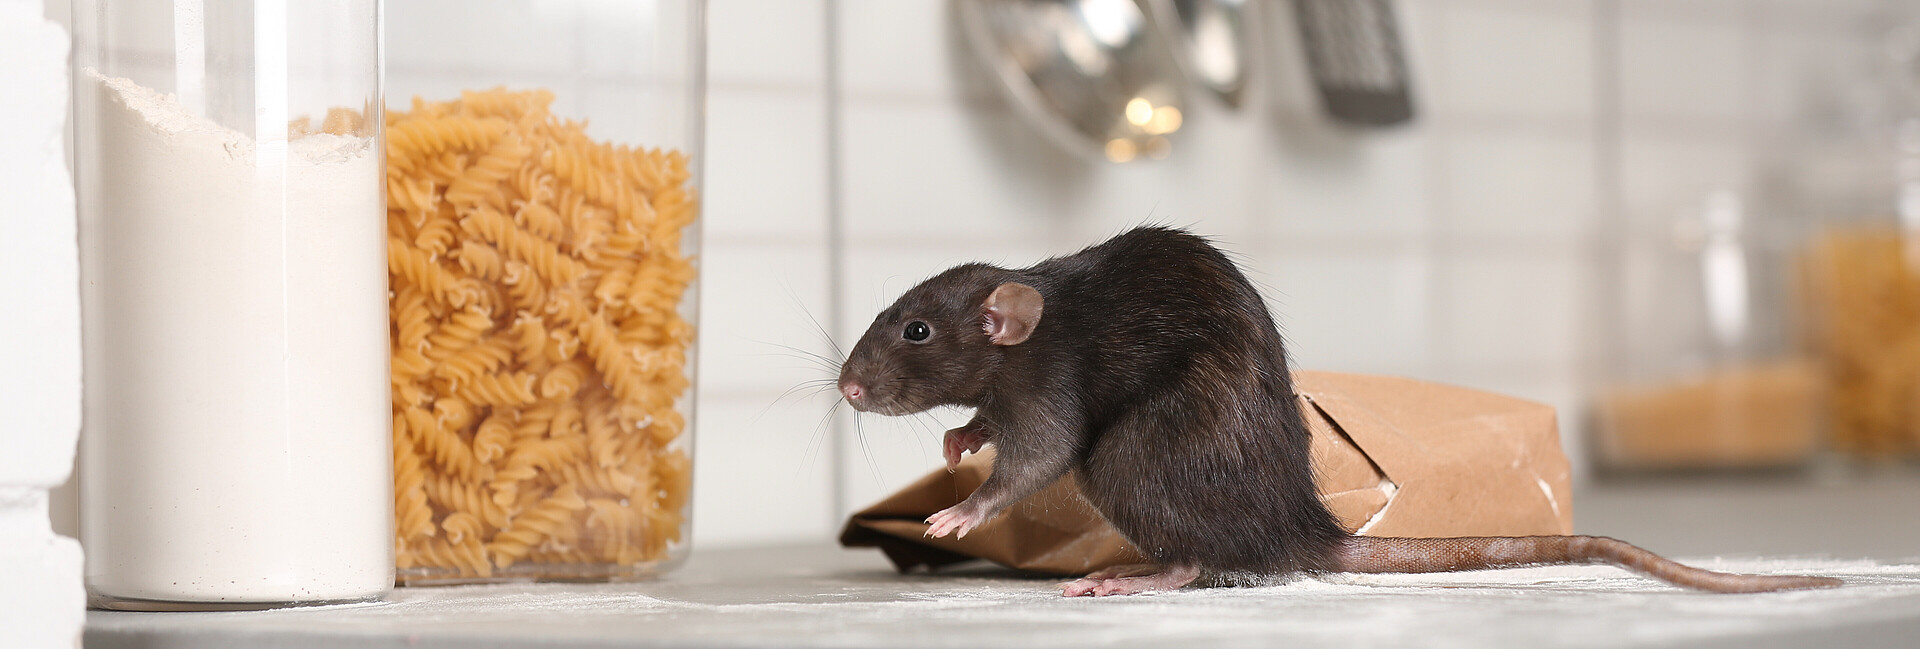 Ratte sitzt auf einem Küchentisch neben einer angenagten Mehltüte